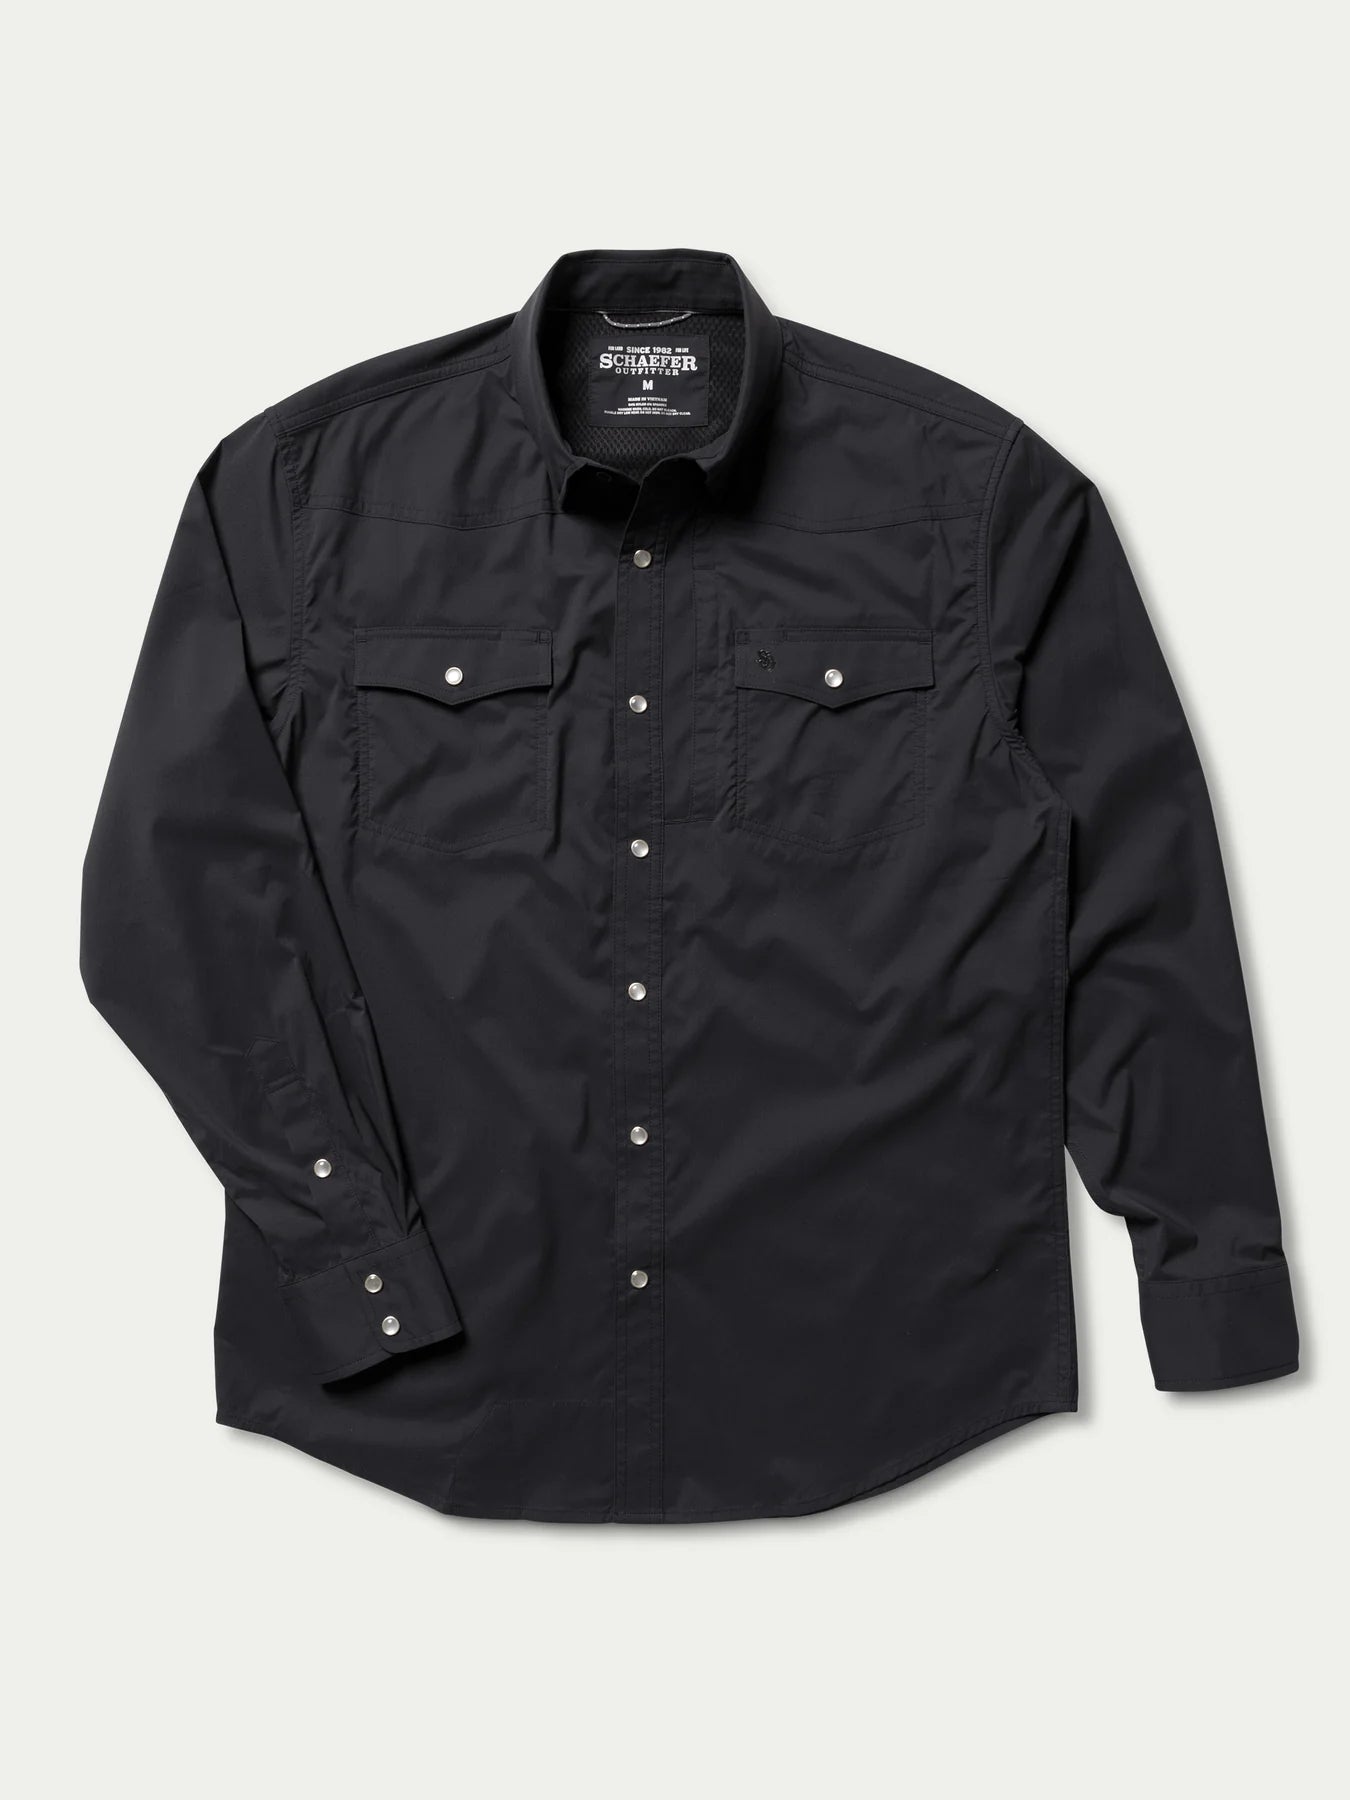 Schaefer Outfitter RangeTek Western Guide Snap Shirt